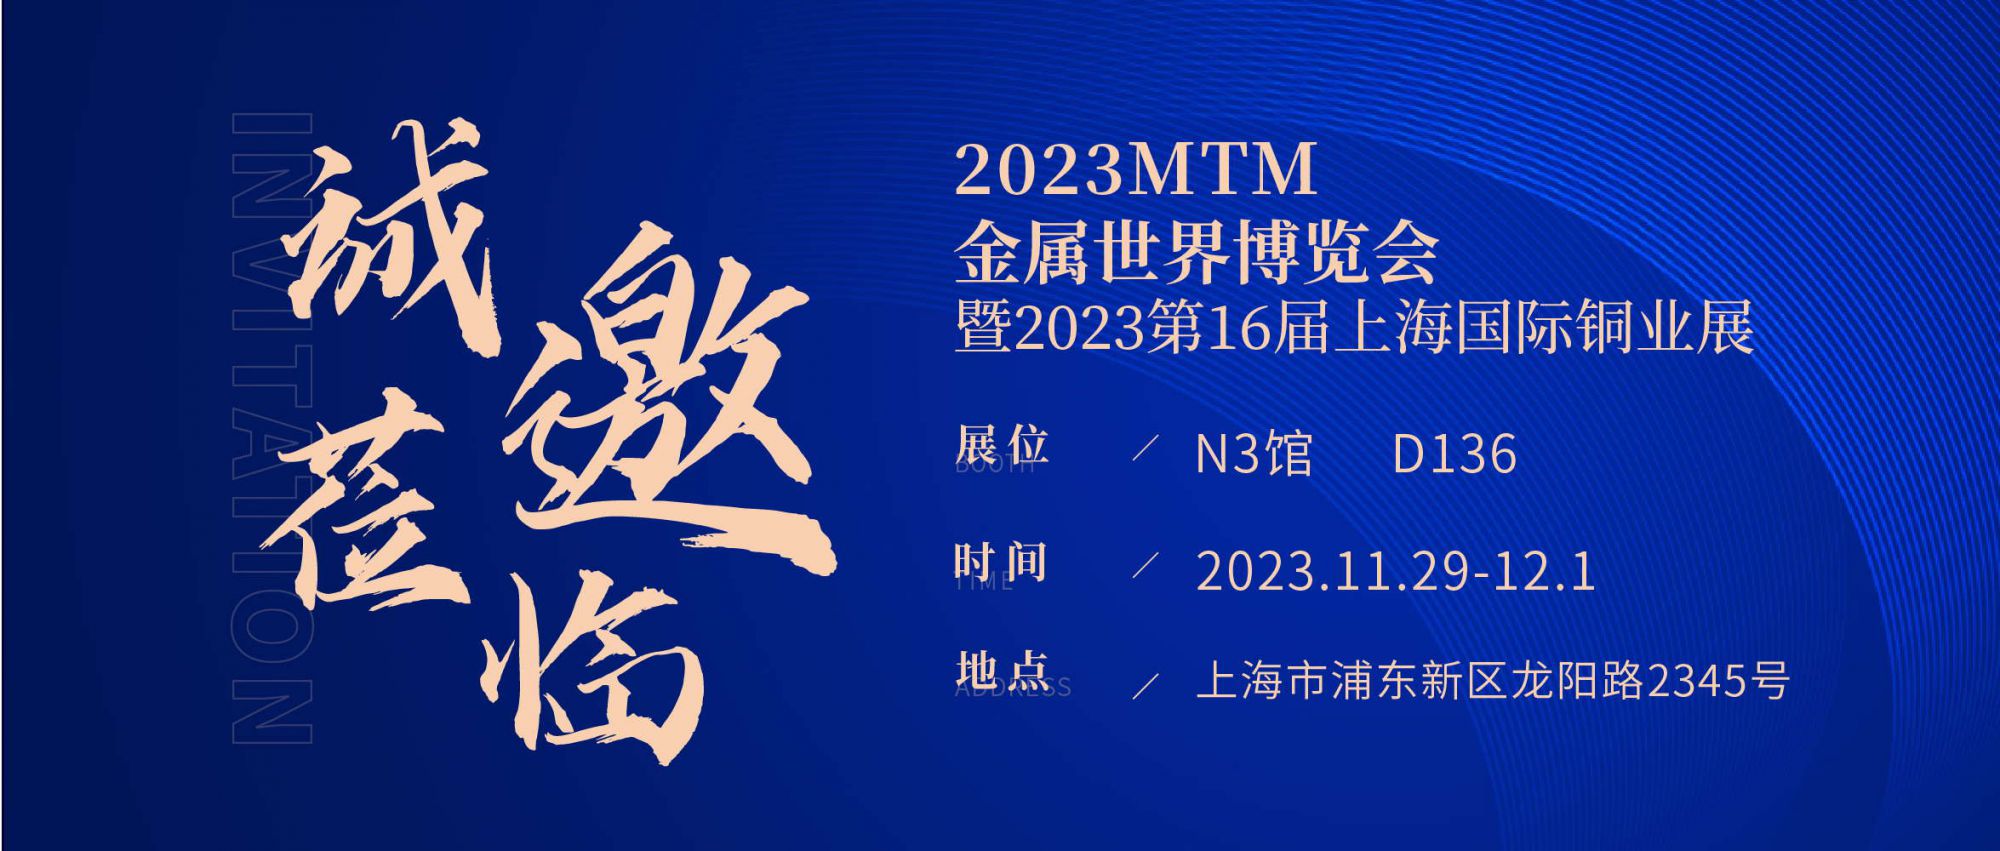 展会直击 | 2023MTM开幕首日！J...